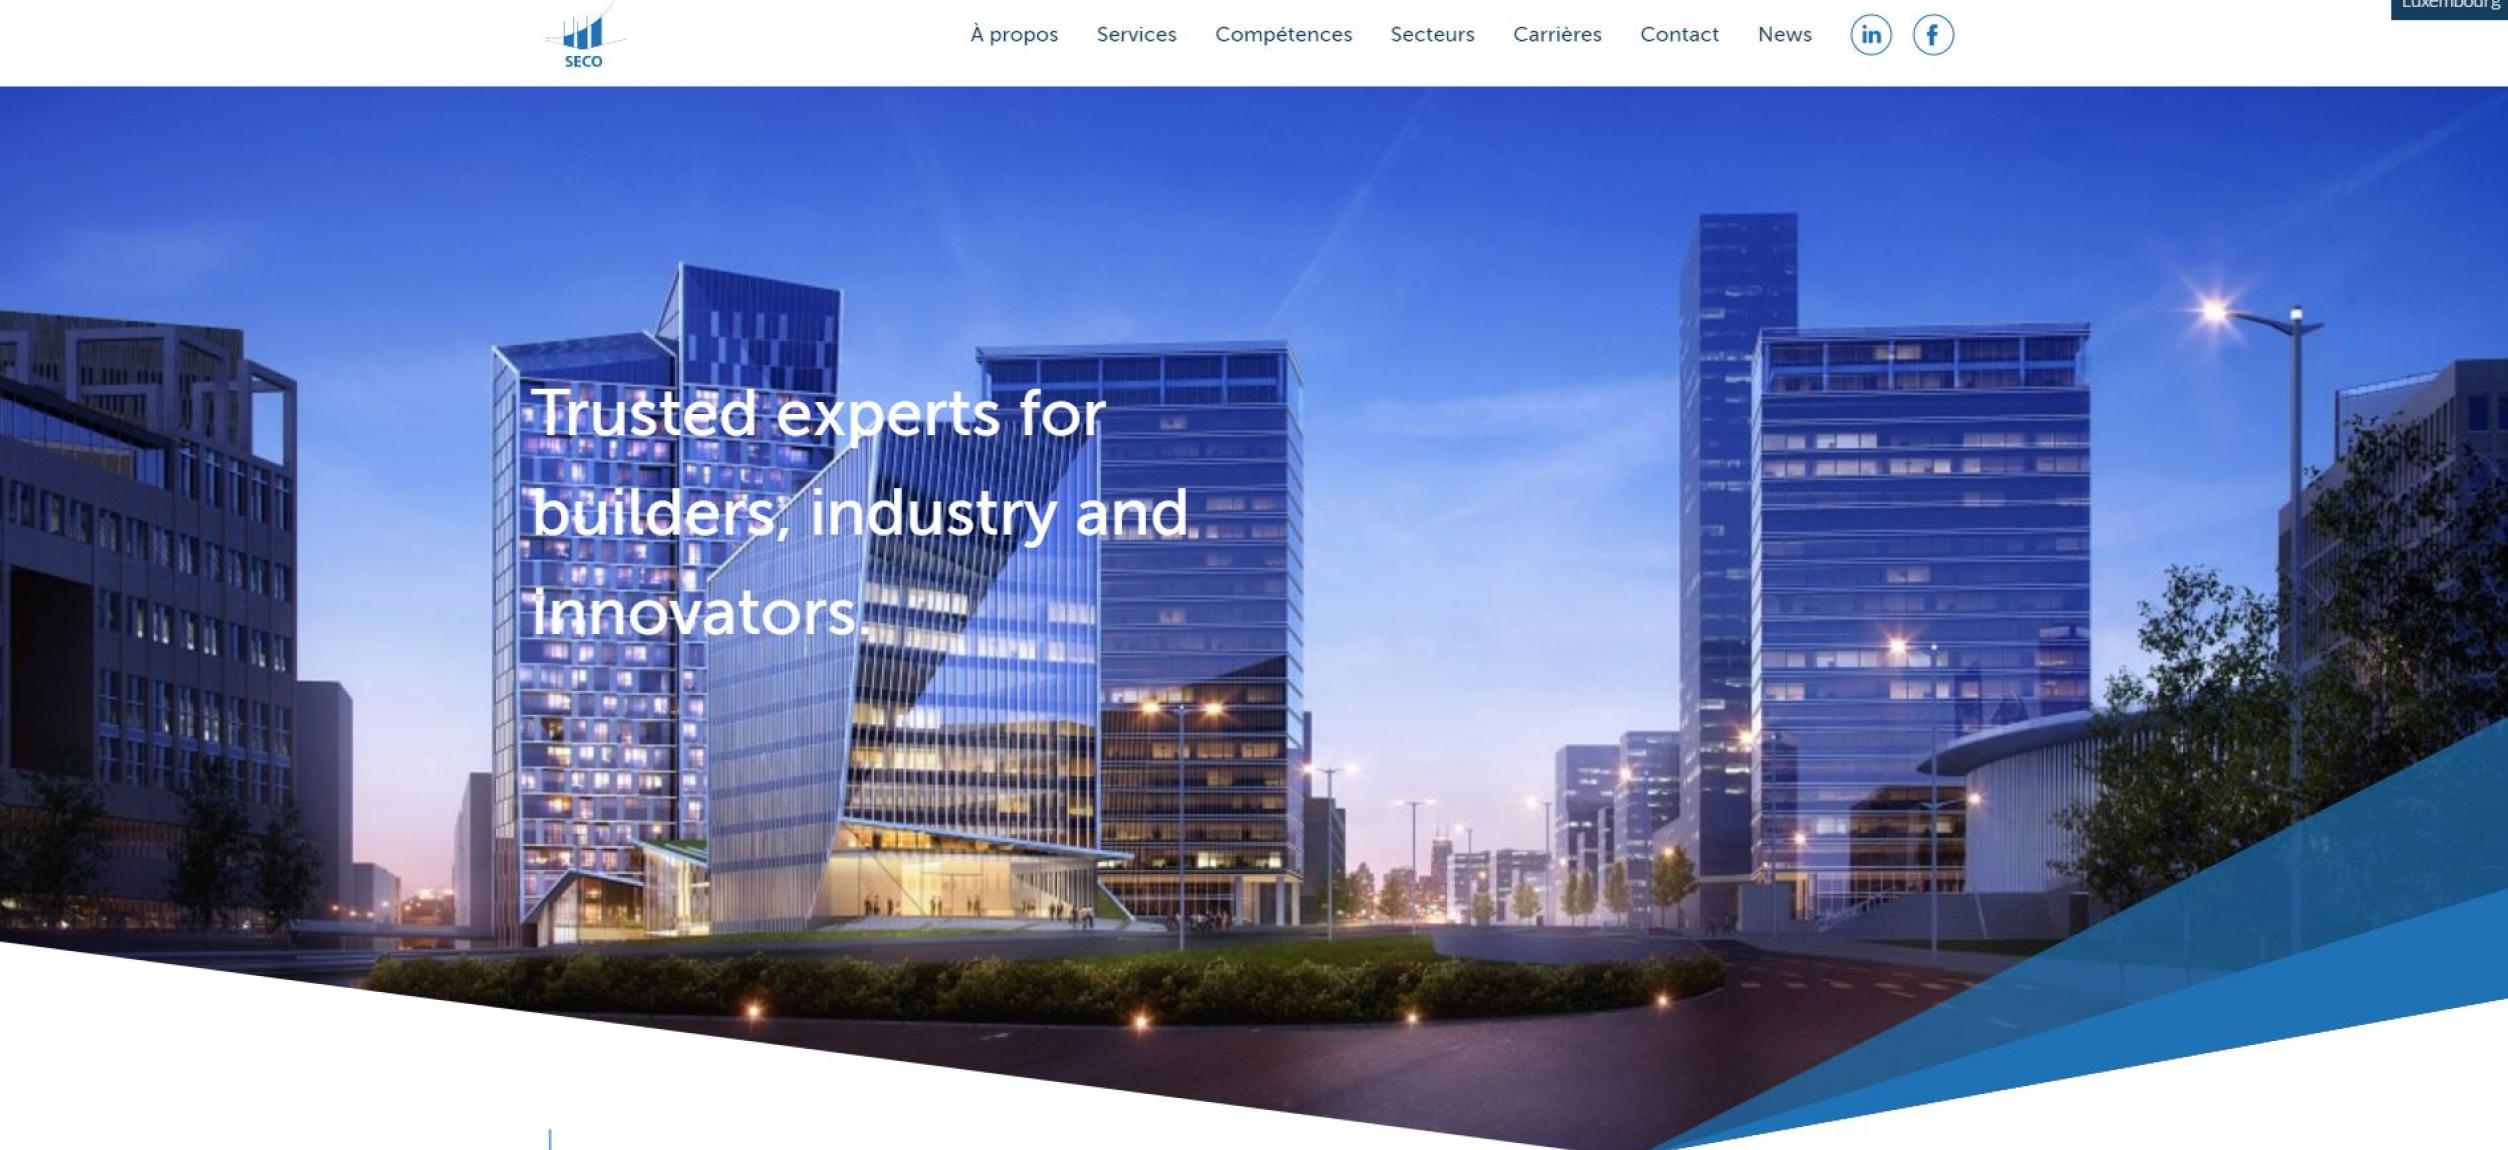 Le nouveau site internet de SECO Luxembourg